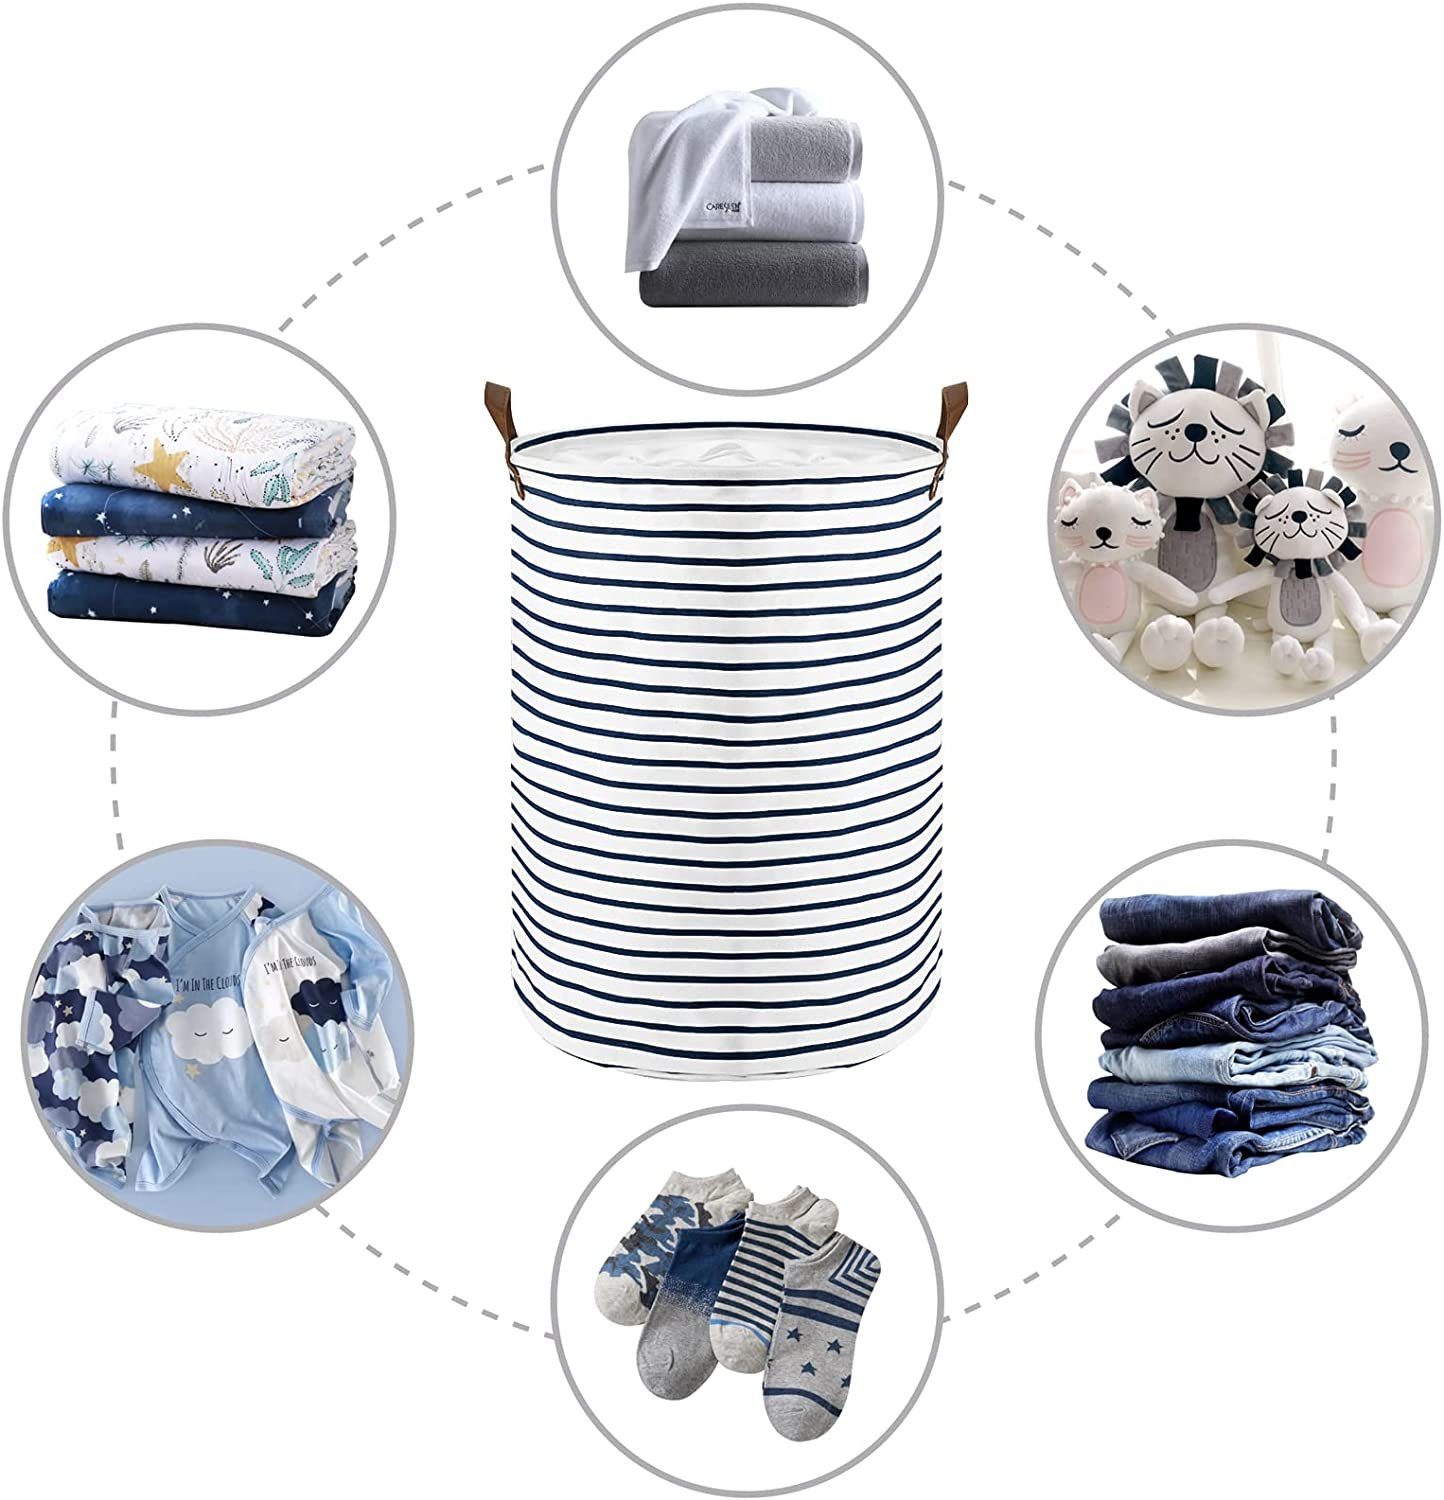 Faltbare Zusammenklappbar Wäschekorb 18-Inches Haiaveng Wäsche Lagerung Runde Wäschekörbe, Aufbewahrungsbehälter Schmutzige